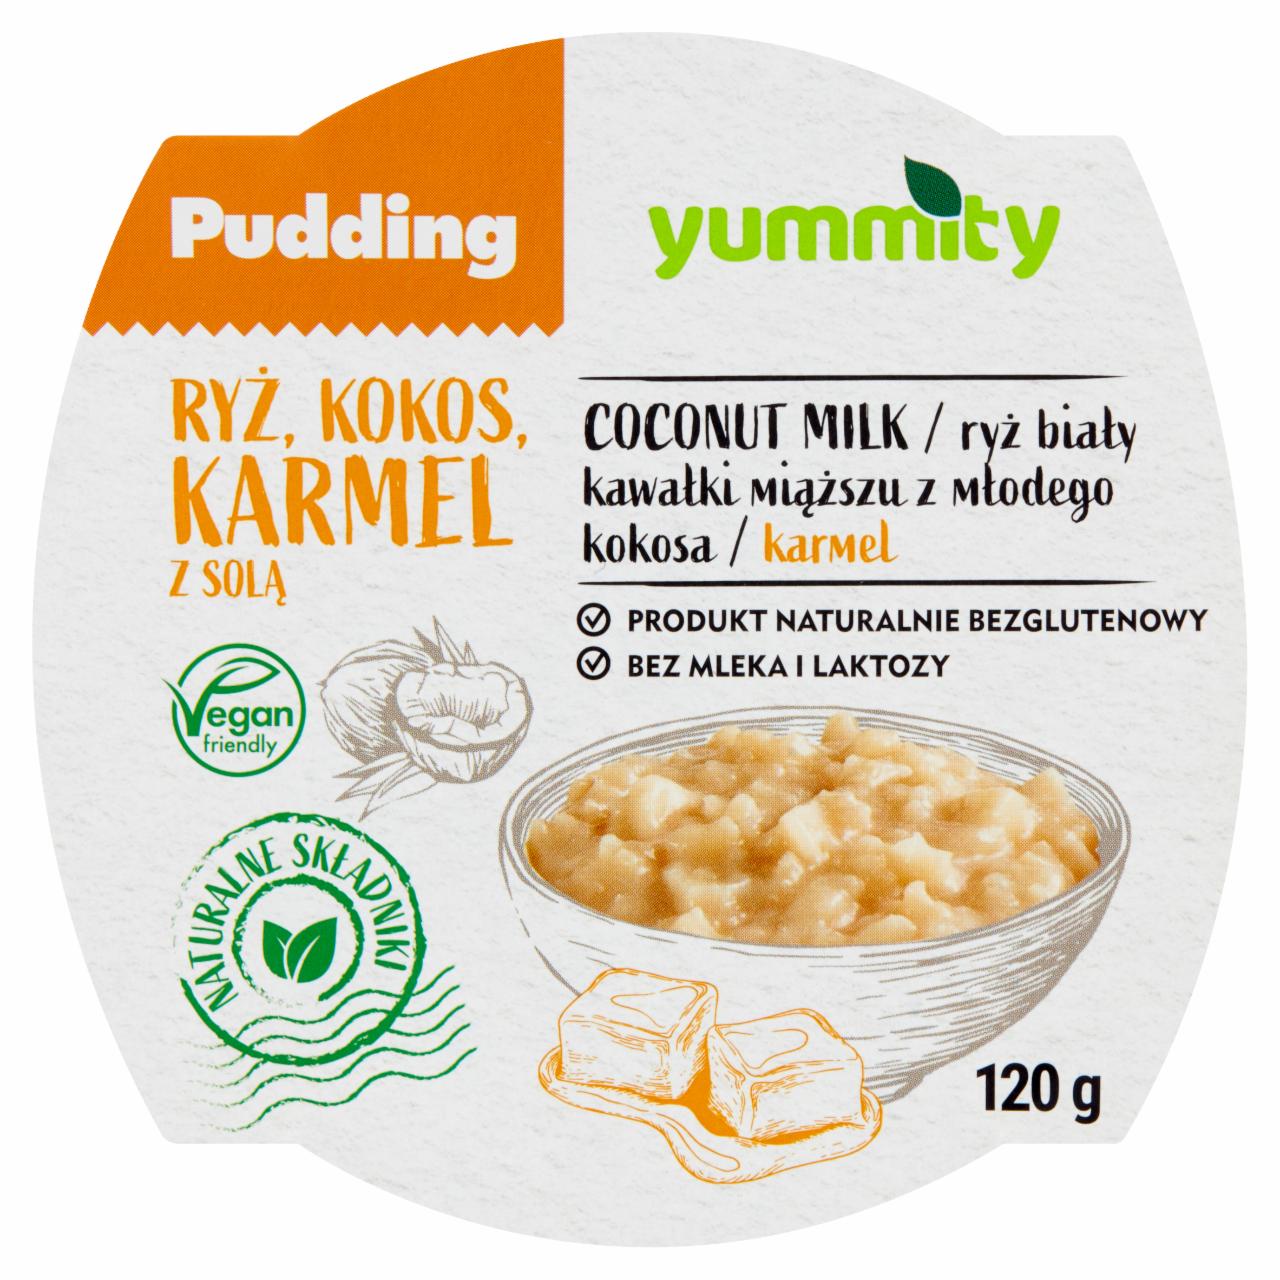 Zdjęcia - Yummity Bezglutenowy pudding ryżowy z kokosem i solonym karmelem 120 g